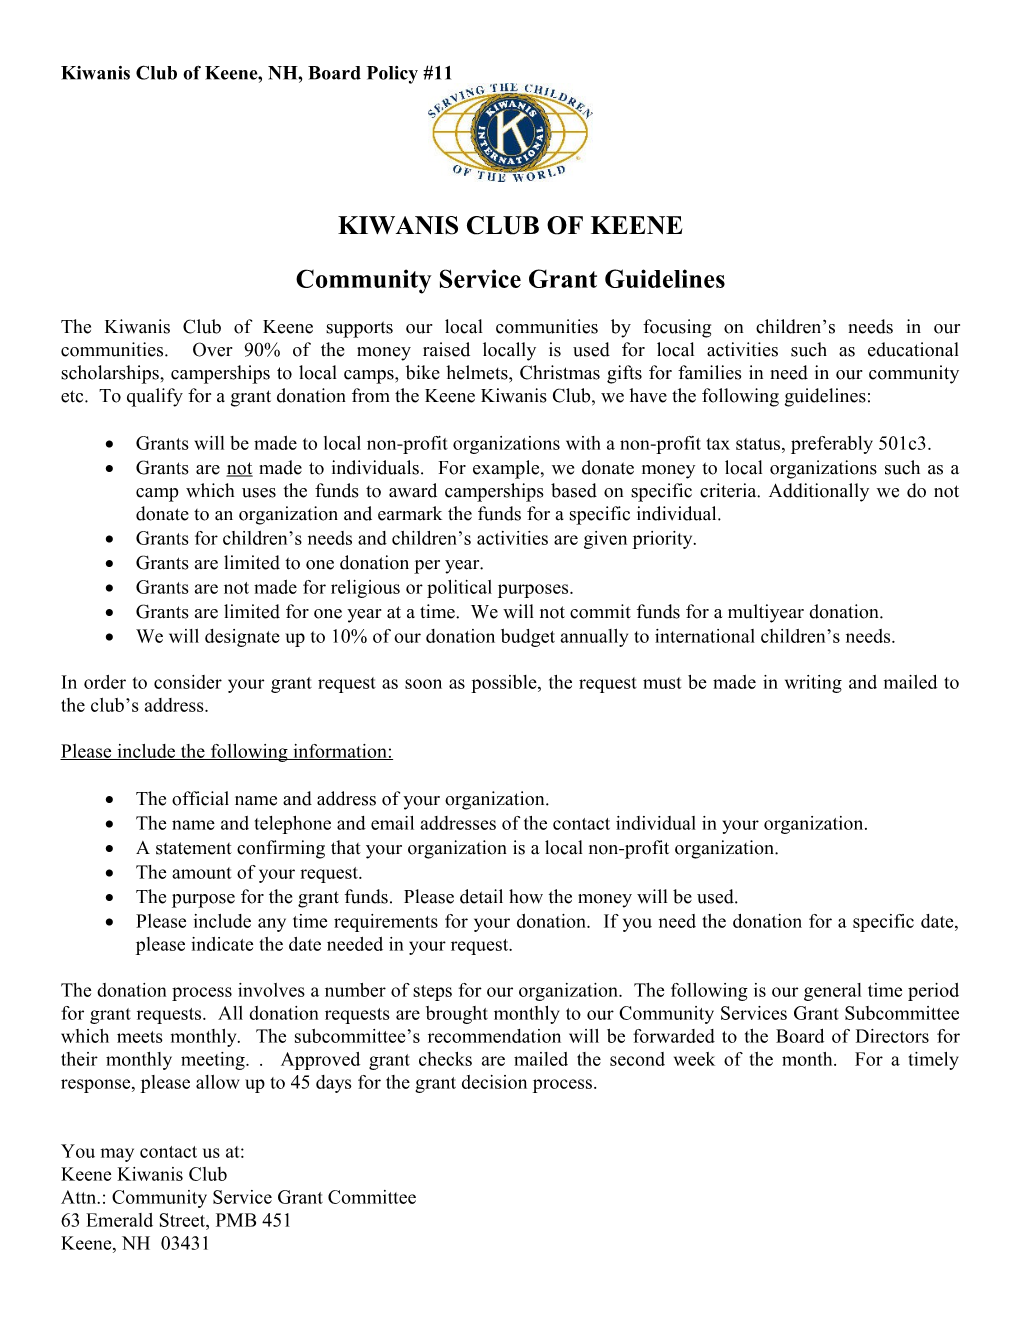 Keene, NH Kiwanis Club Grant Guidelines